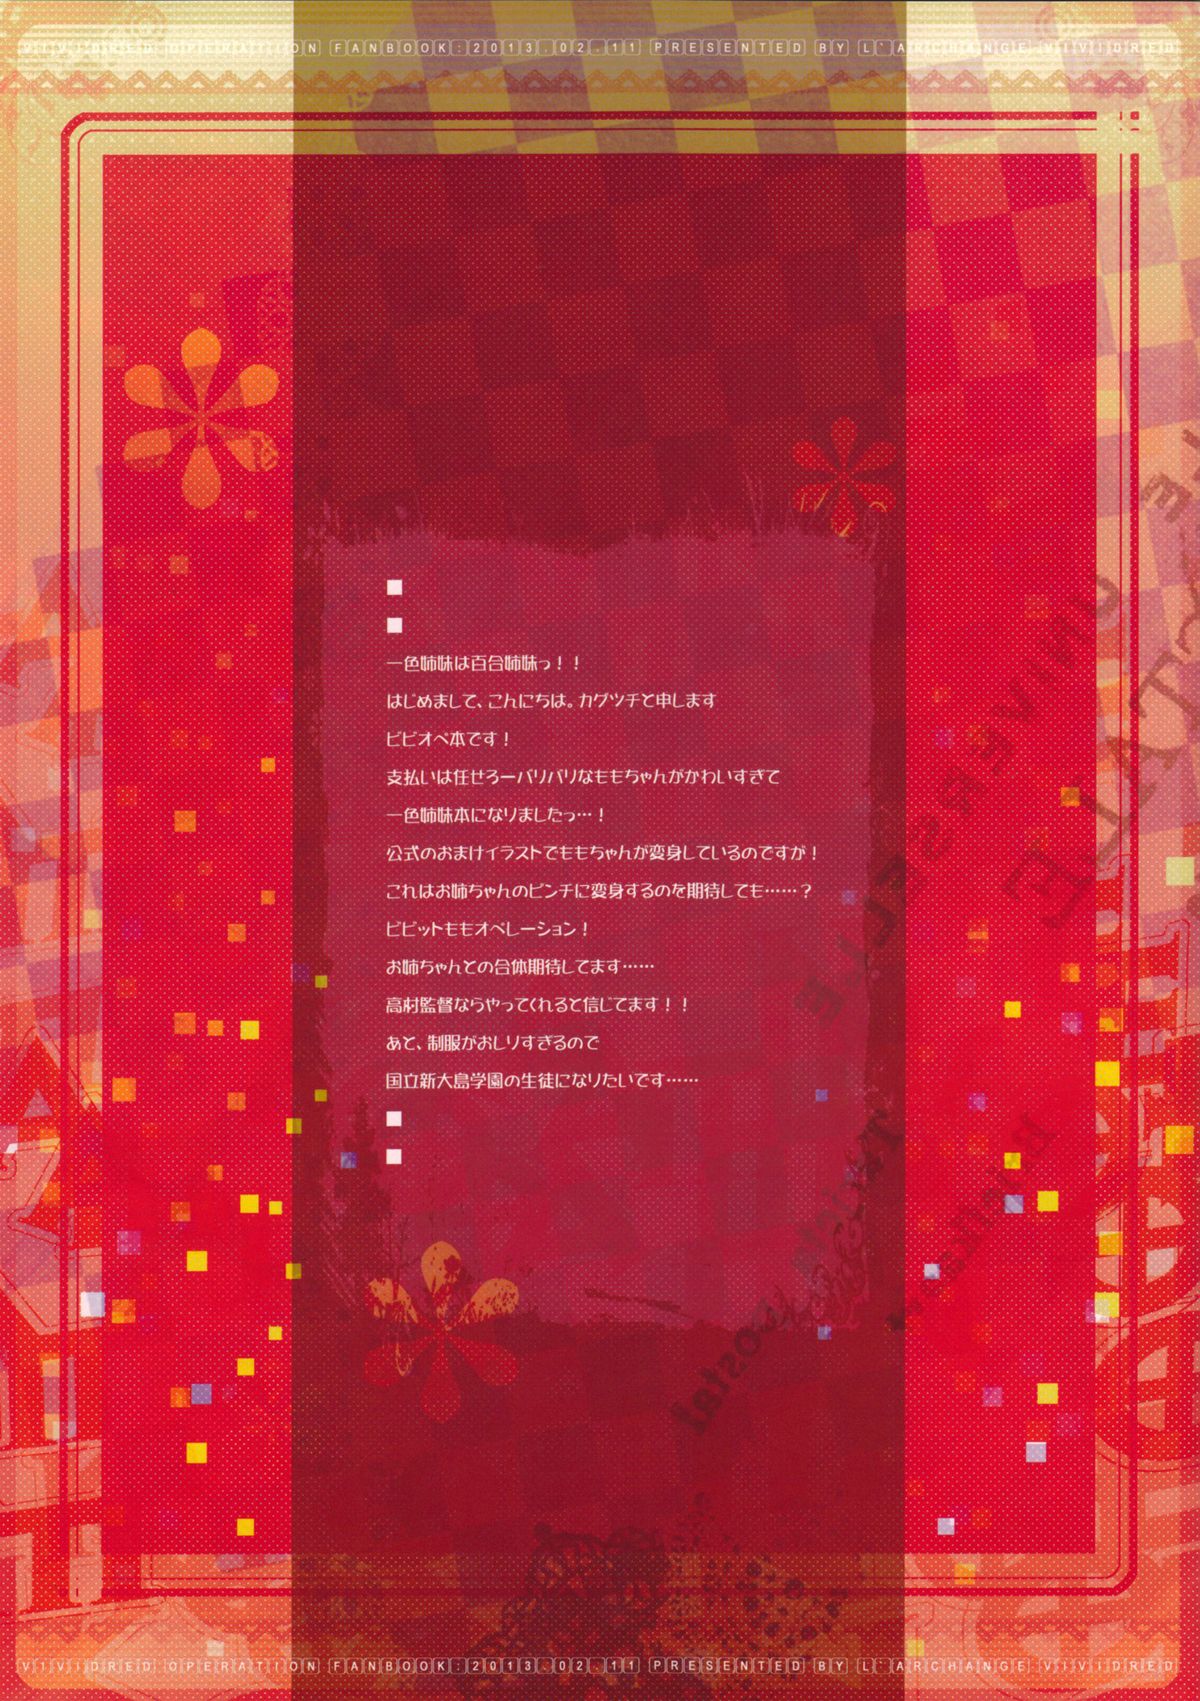 (SC58) [L'ARCHANGE (Kagutsuchi)] Vivid Momo Operation no Tame ni Isshiki Shimai ga Tokunou Mayonnaise-mamire de Ganbaru Hon (Vividred Operation) page 2 full